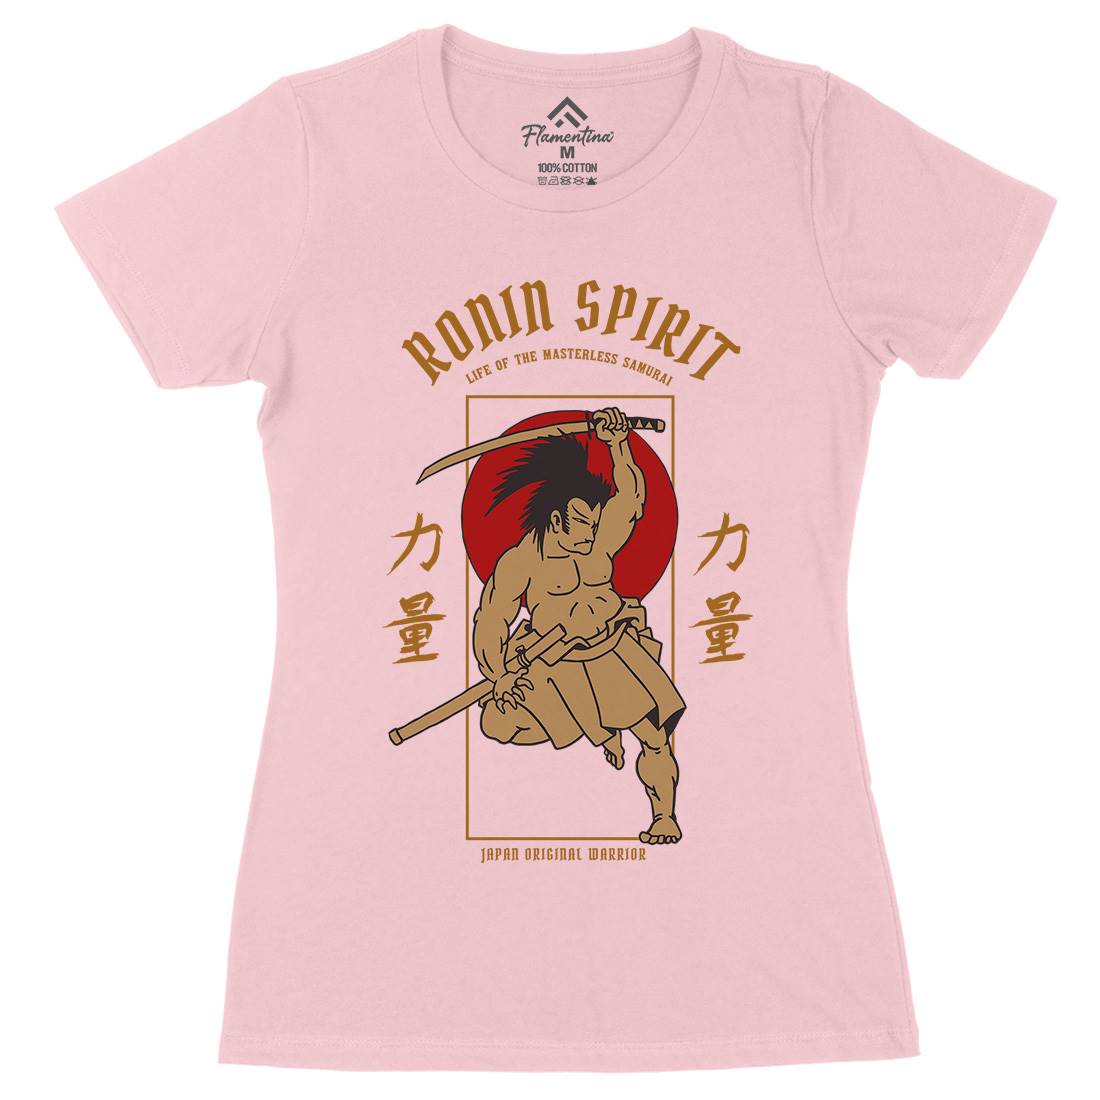 Japanese Hero Womens Organic Crew Neck T-Shirt Warriors C736